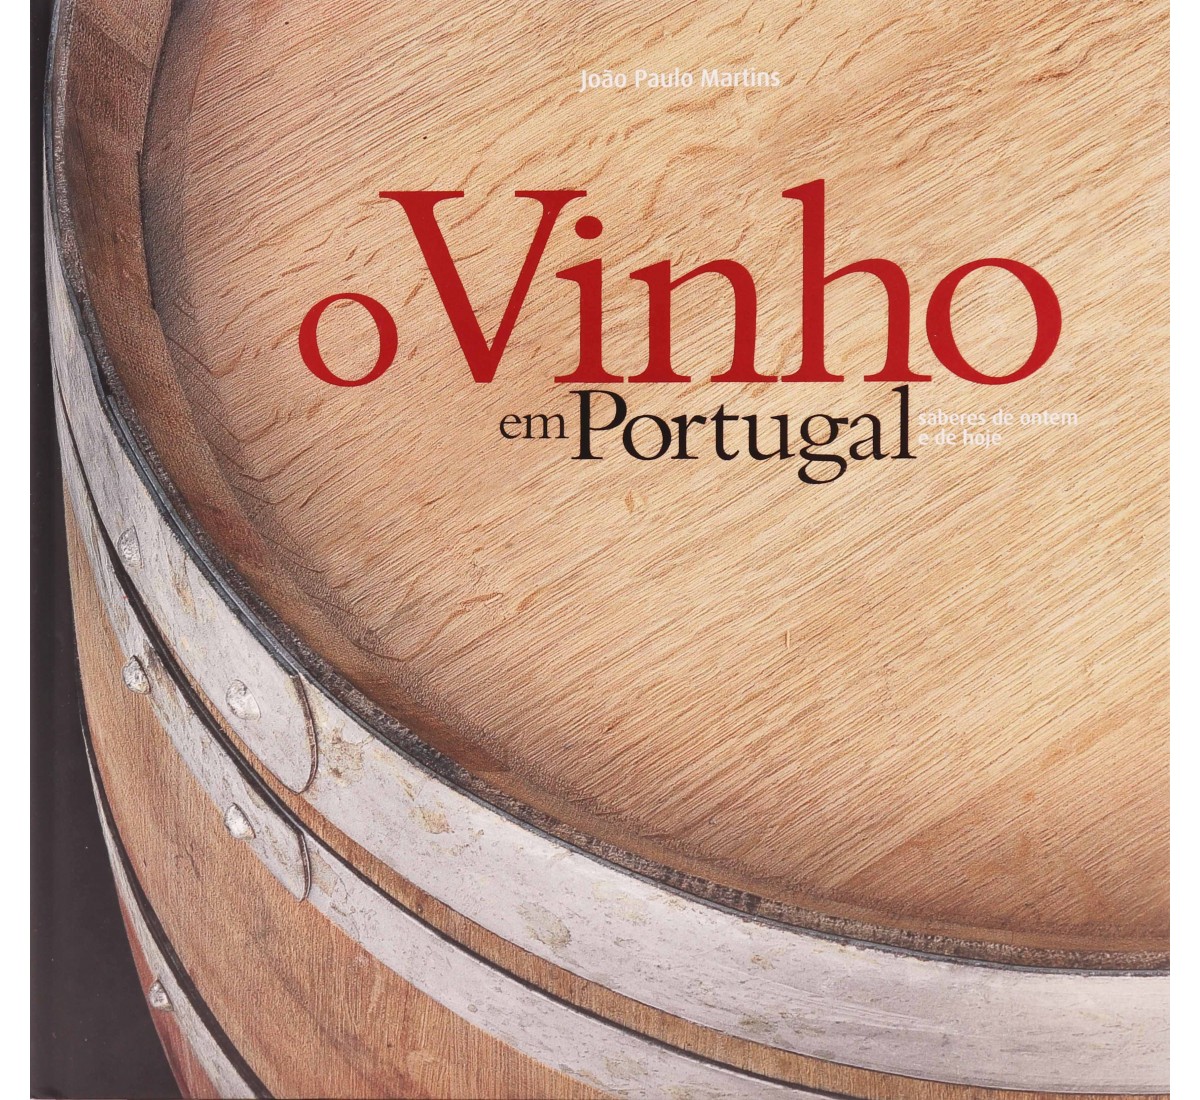 Livro dos CTT - O vinho em Portugal